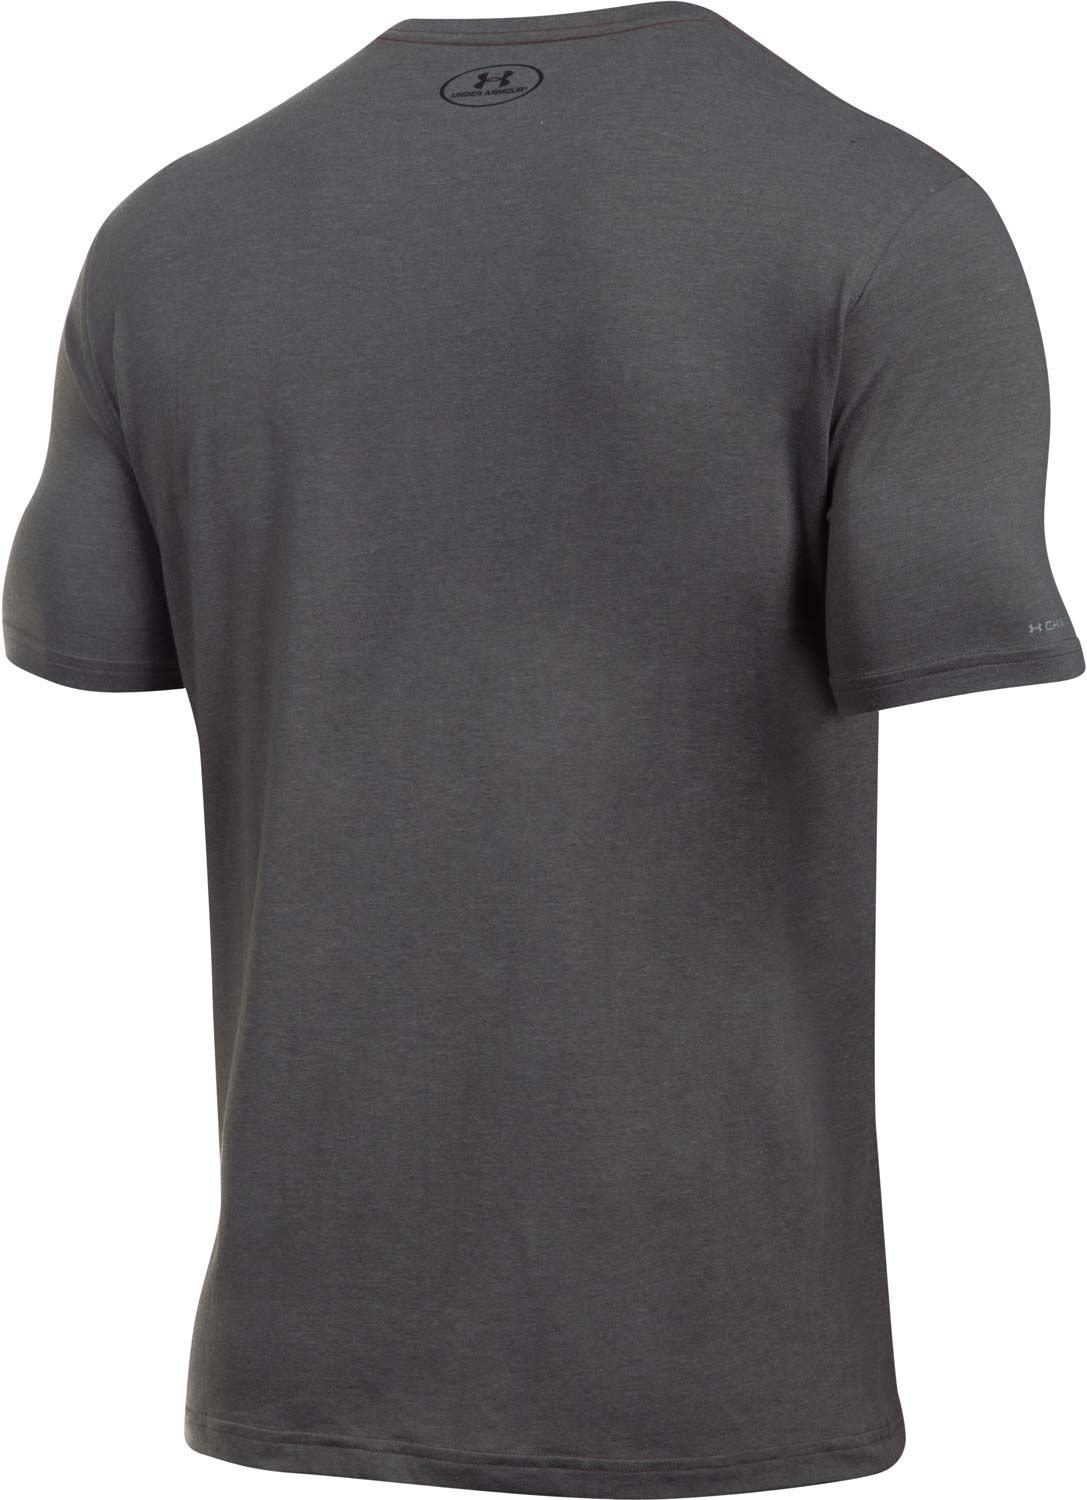 Herren T- Shirt